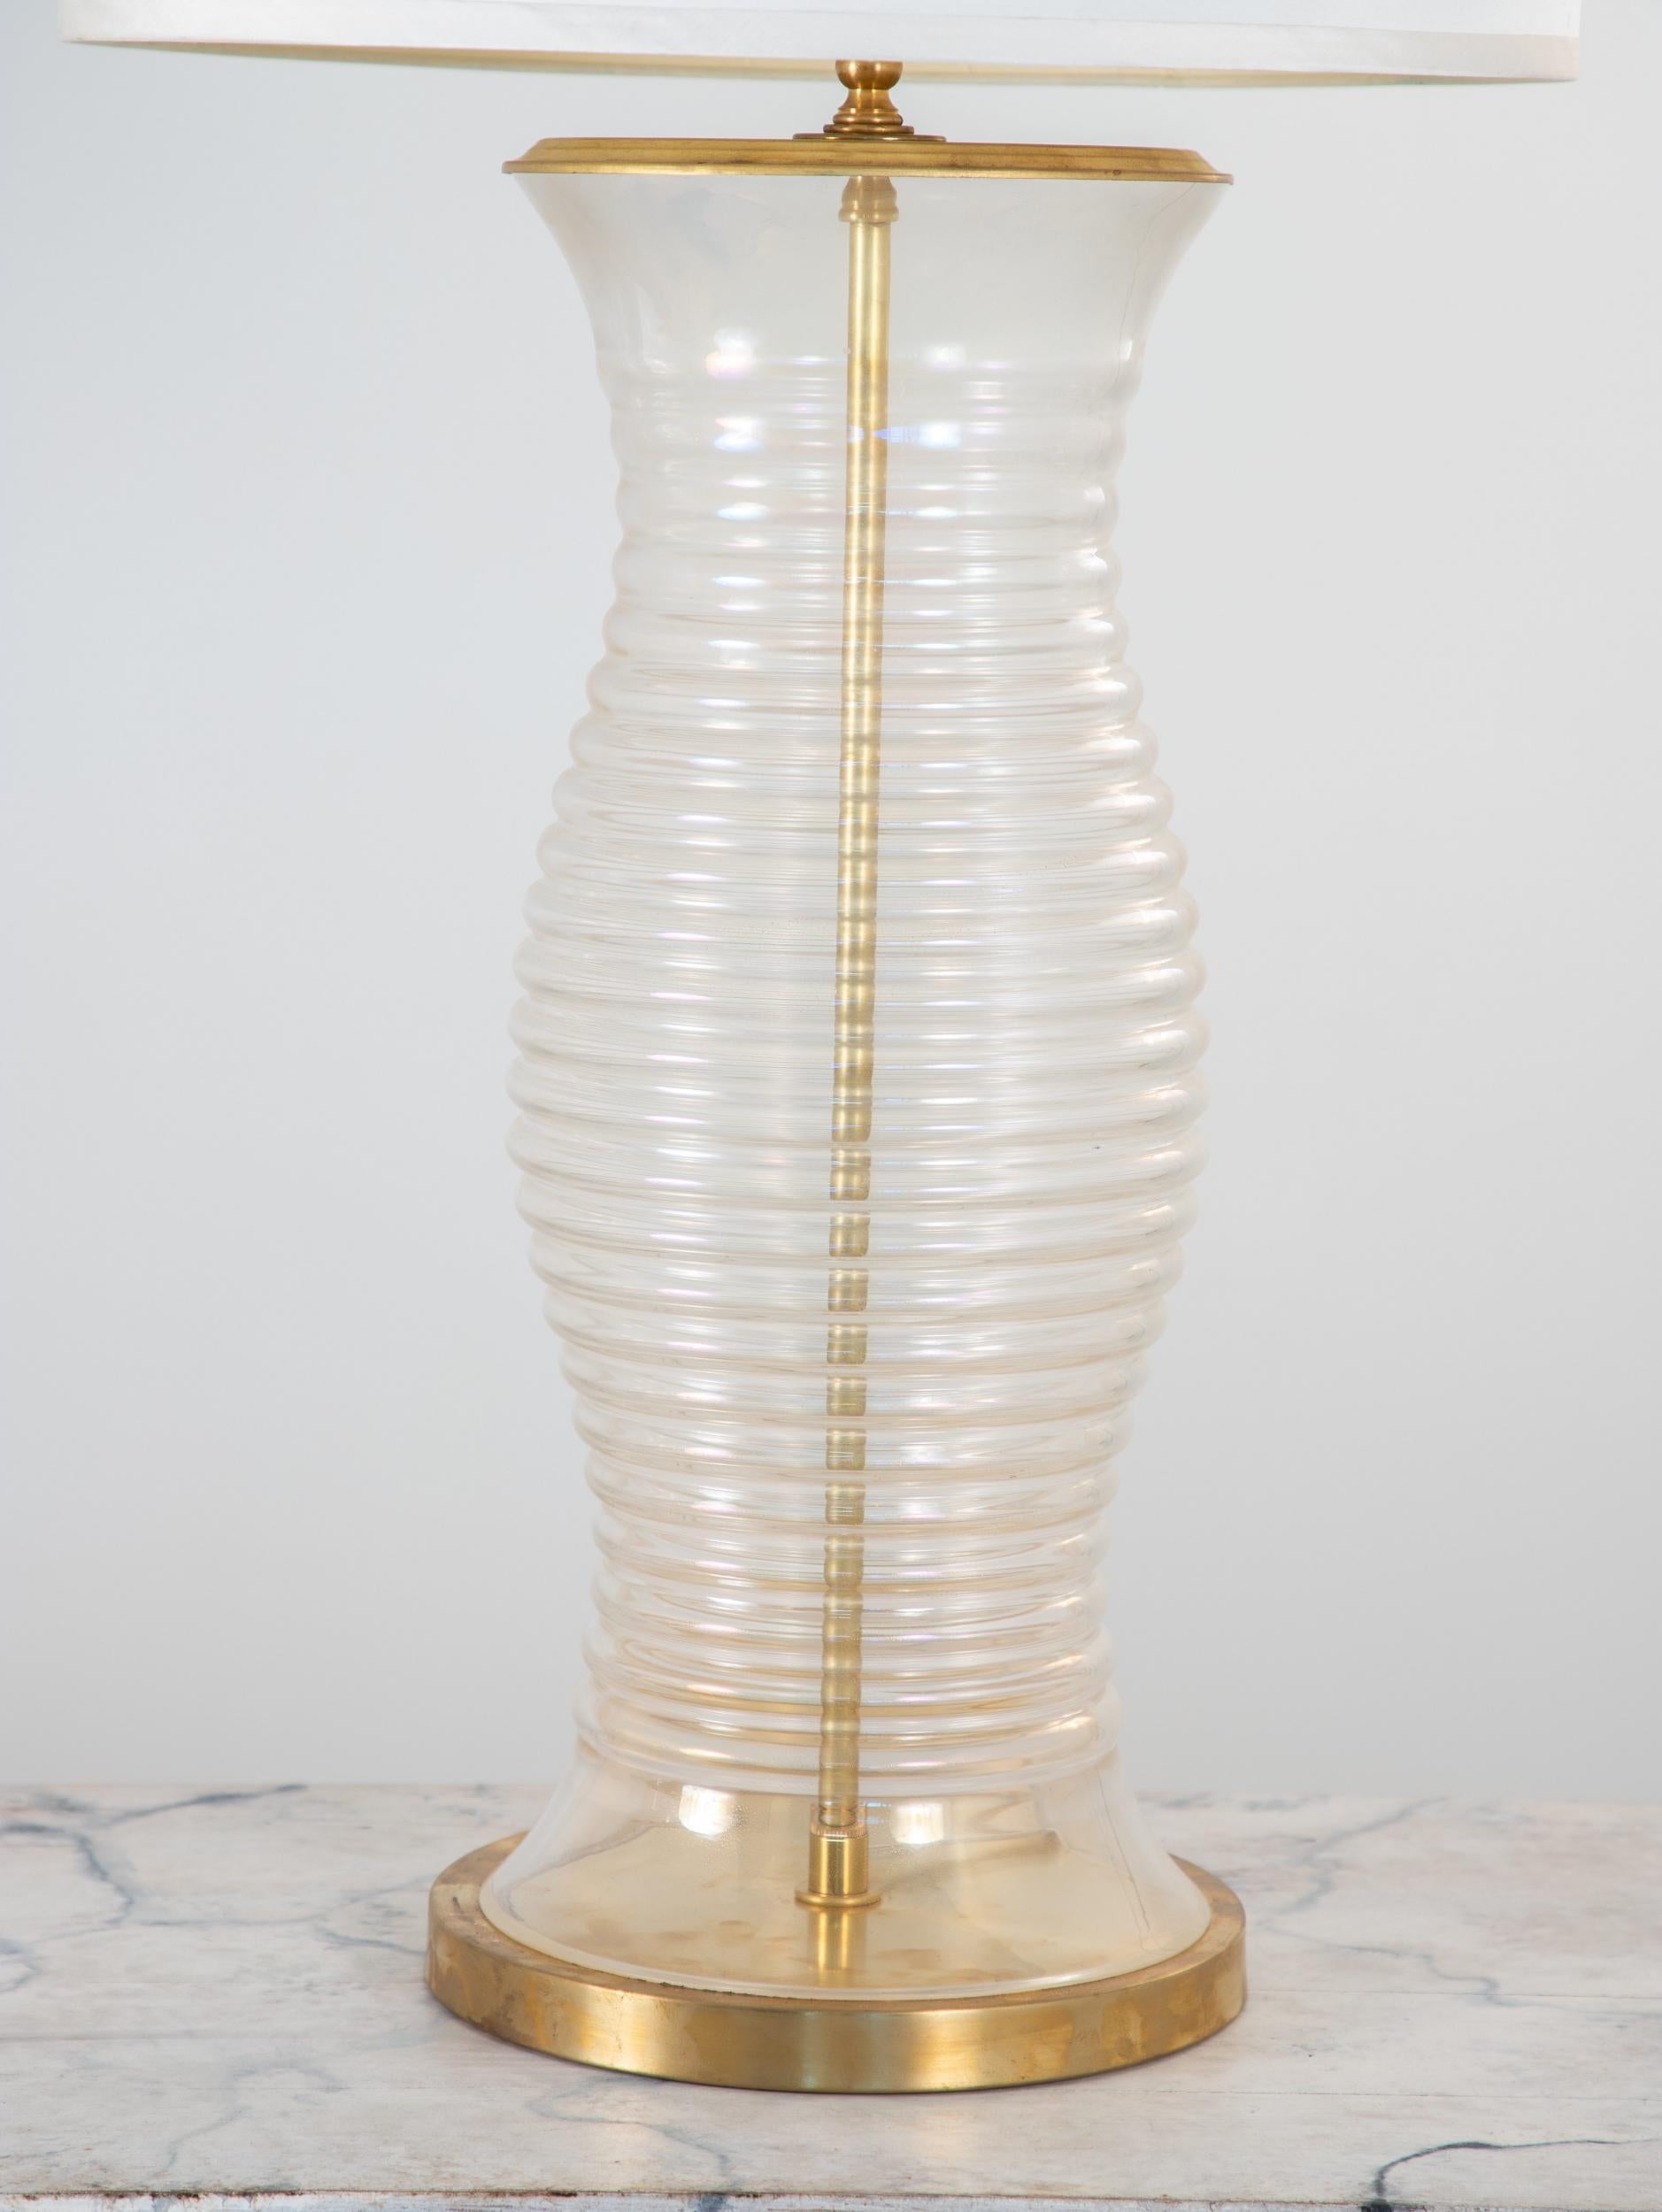 Une lampe surdimensionnée en verre opalescent de Murano. Une base et une tige en laiton complètent la finition opalescente dorée. Trouvée à Murano, cette pièce a été recâblée pour les prises américaines. L'abat-jour et la harpe ne sont pas inclus.